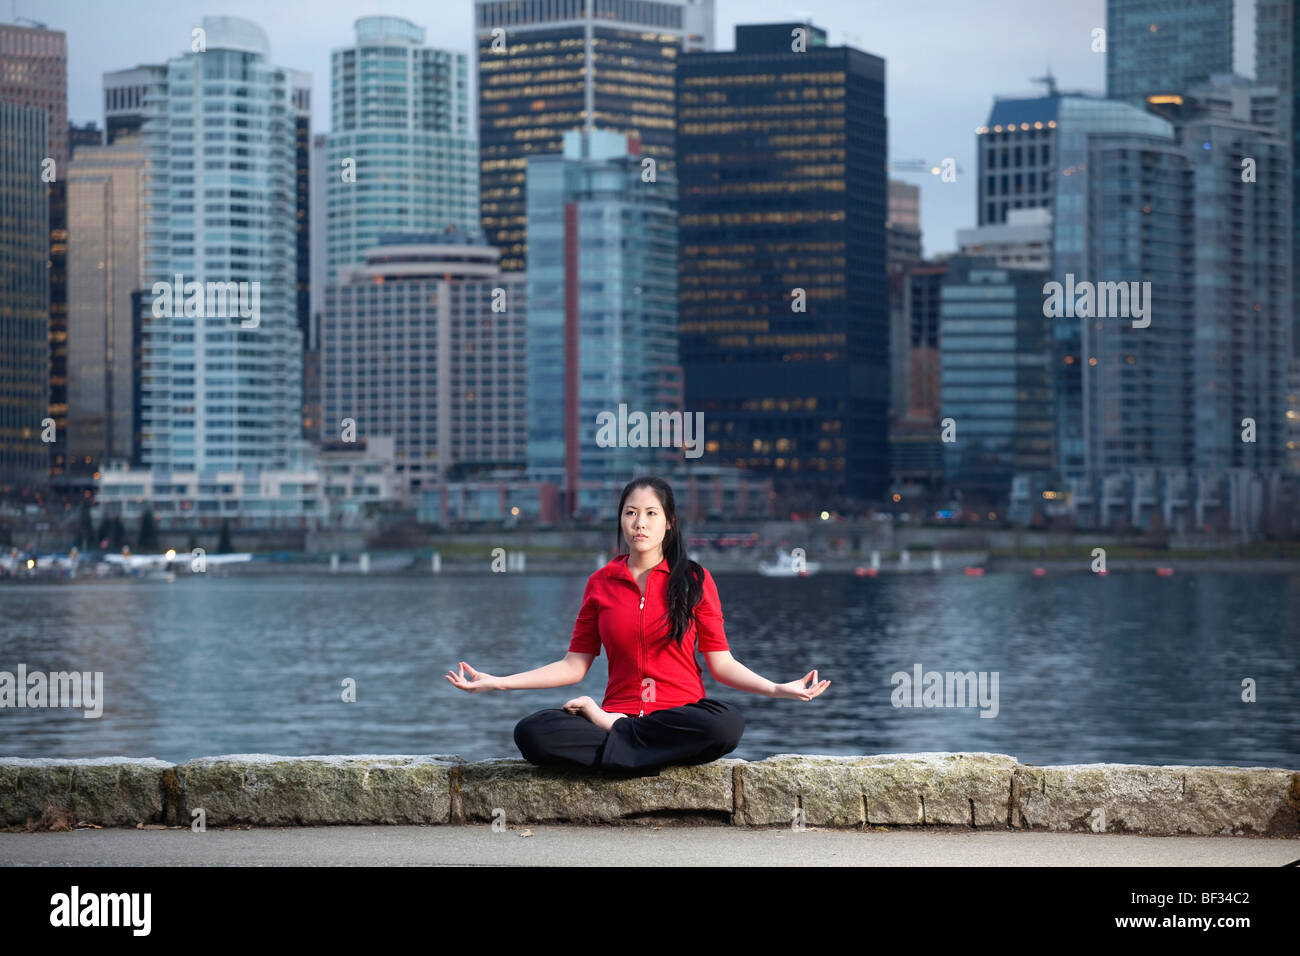 Femme Asiatique n'yoga Lotus Padmasana posent le long du sentier côtier du parc Stanley avec les toits de la ville au-delà, Vancouver, BC, Canada Banque D'Images